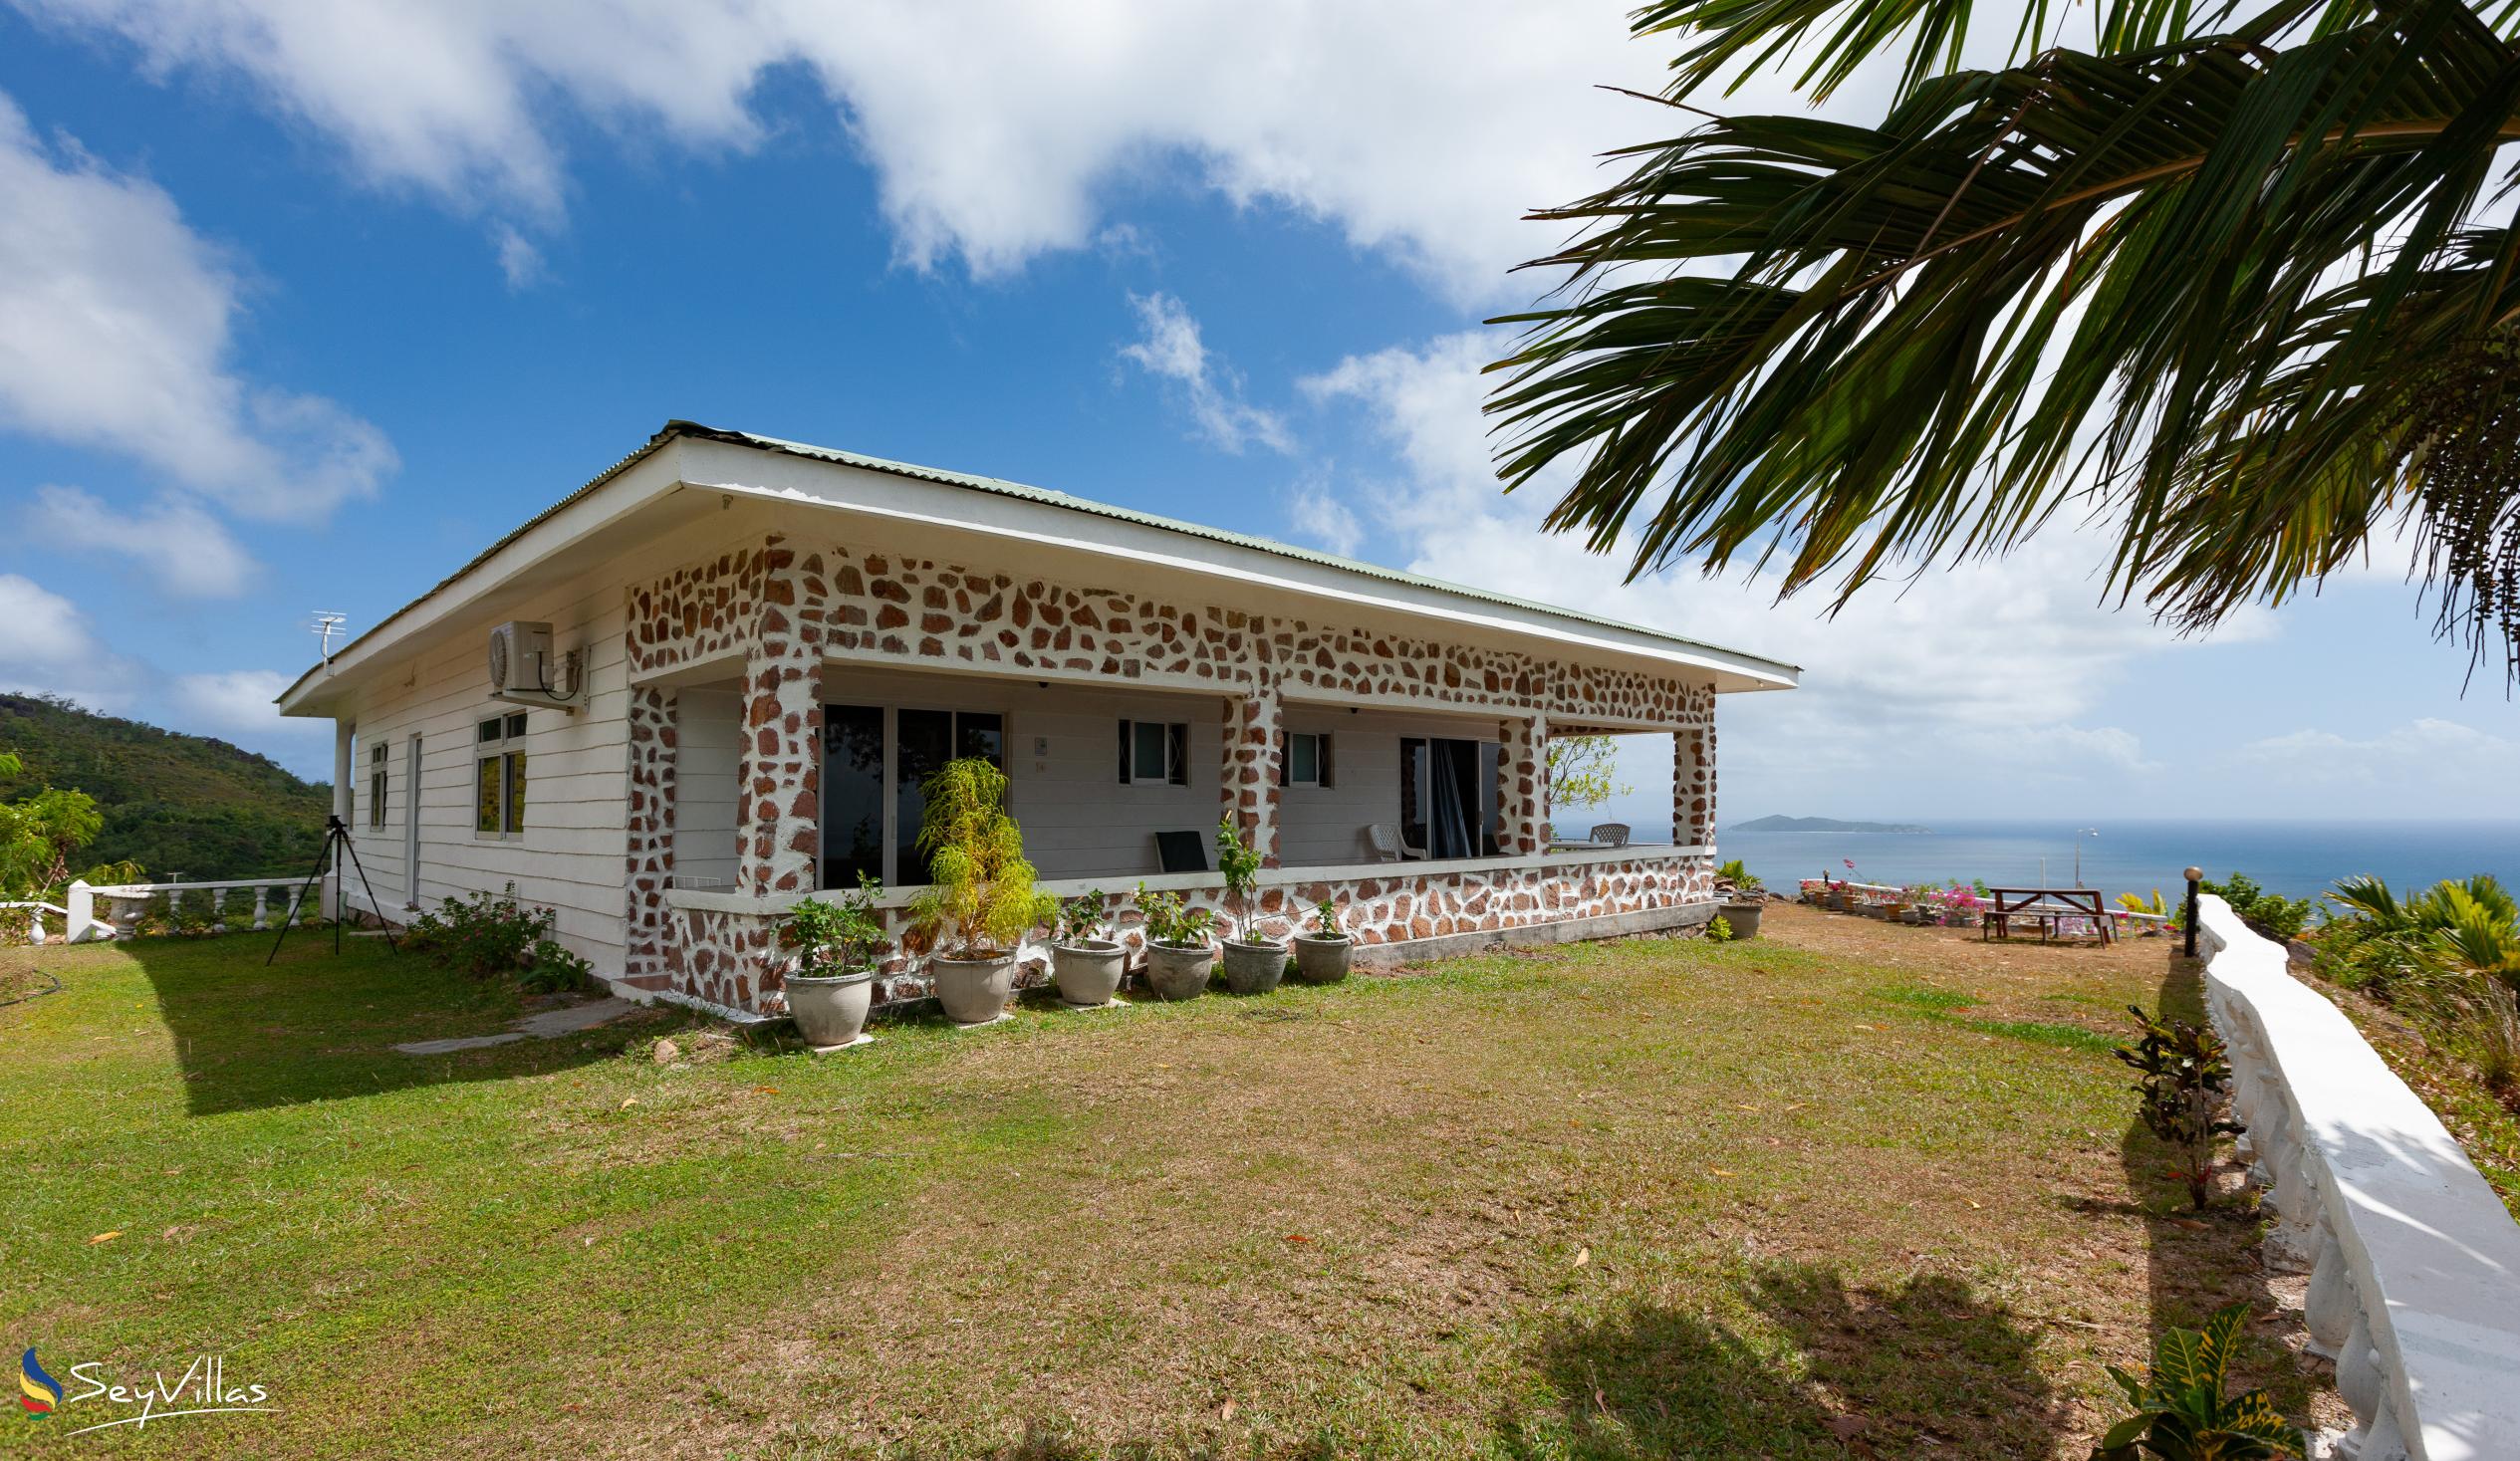 Foto 14: Maison du Soleil - Aussenbereich - Praslin (Seychellen)